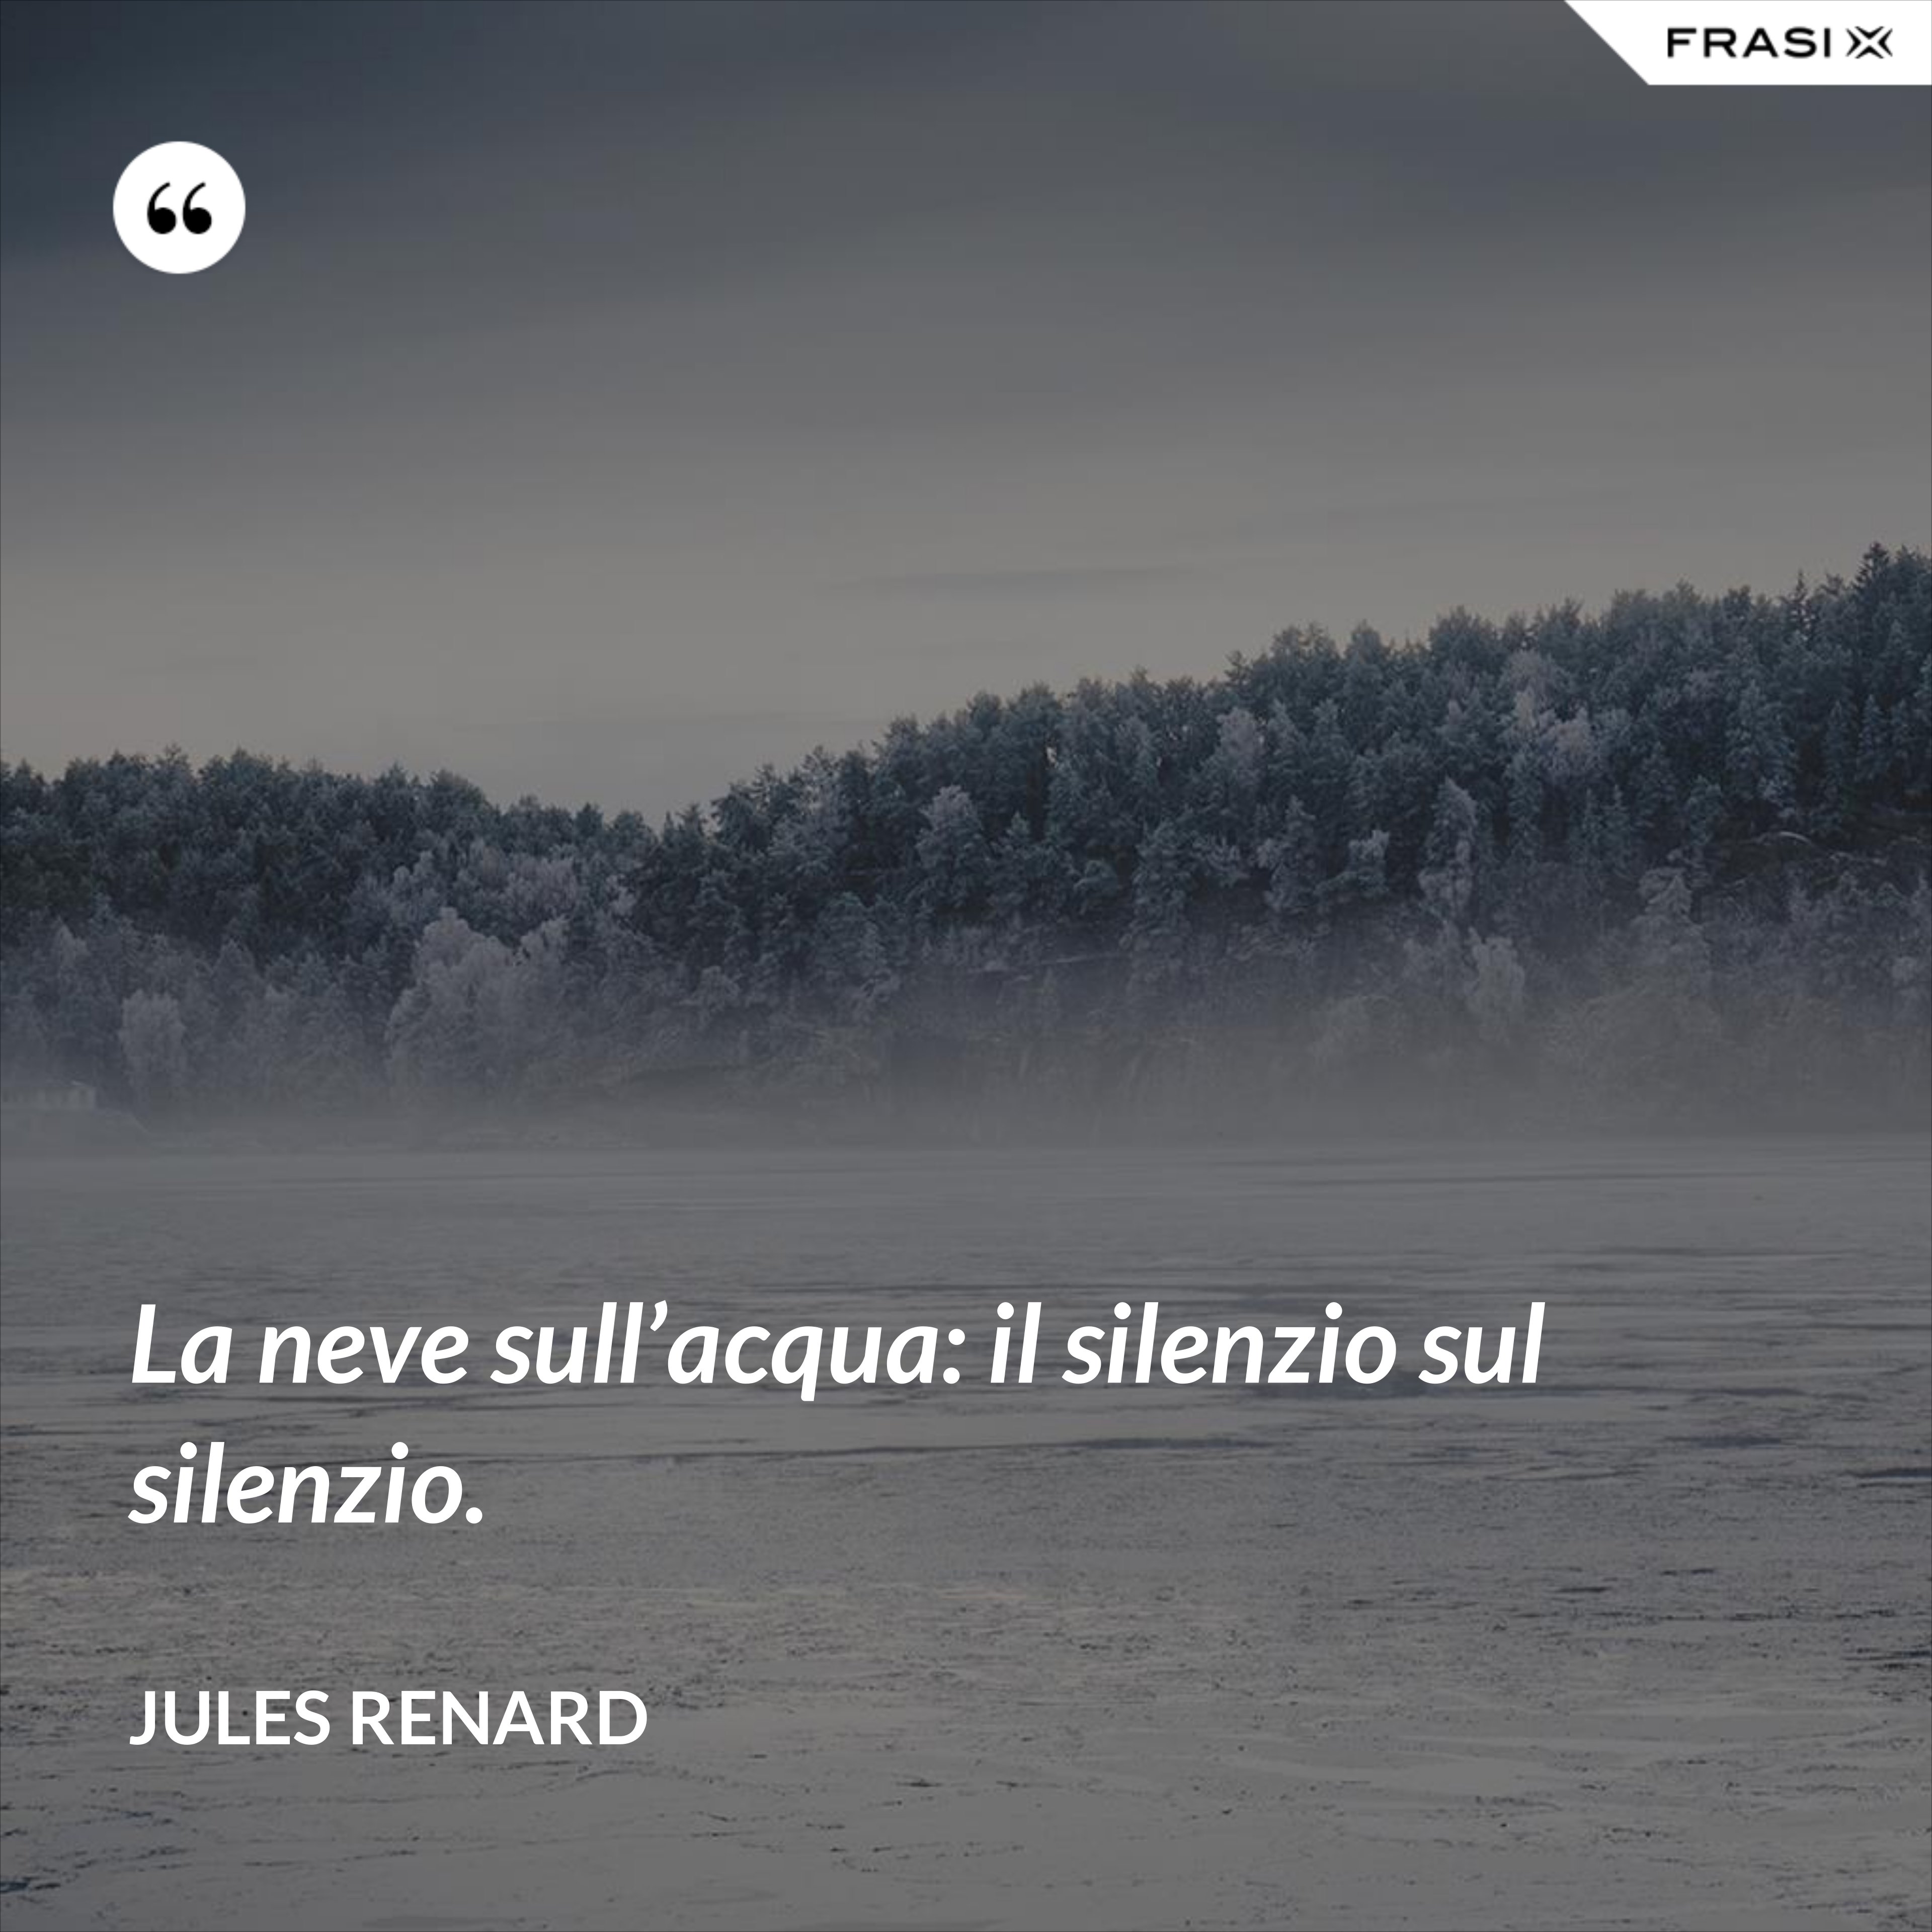 La neve sull’acqua: il silenzio sul silenzio. - Jules Renard